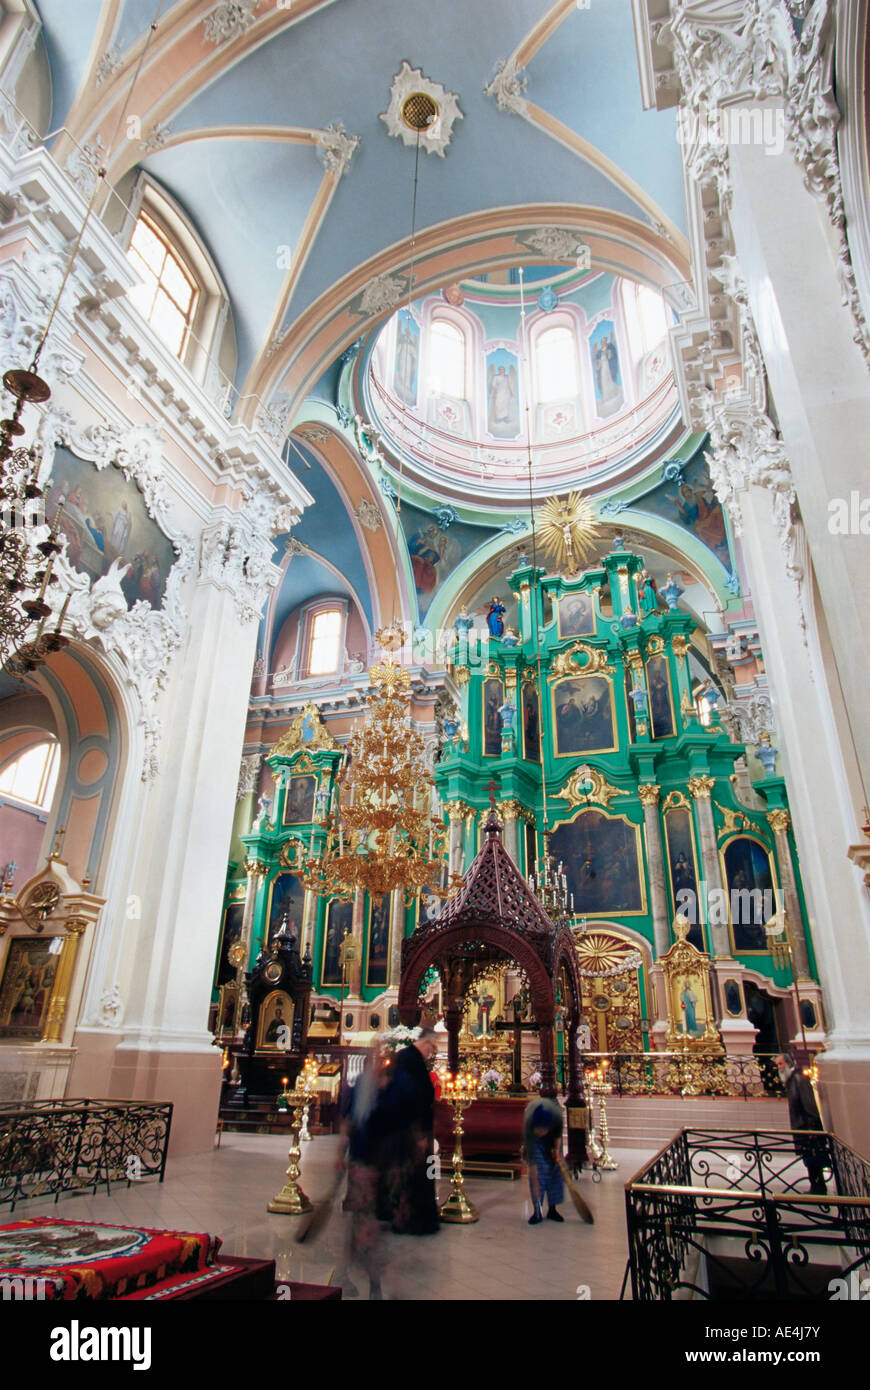 Innenraum der orthodoxen Kirche des Heiligen Geistes, der Chef Russisch-orthodoxe Kirche Litauens, Vilnius, Litauen Stockfoto